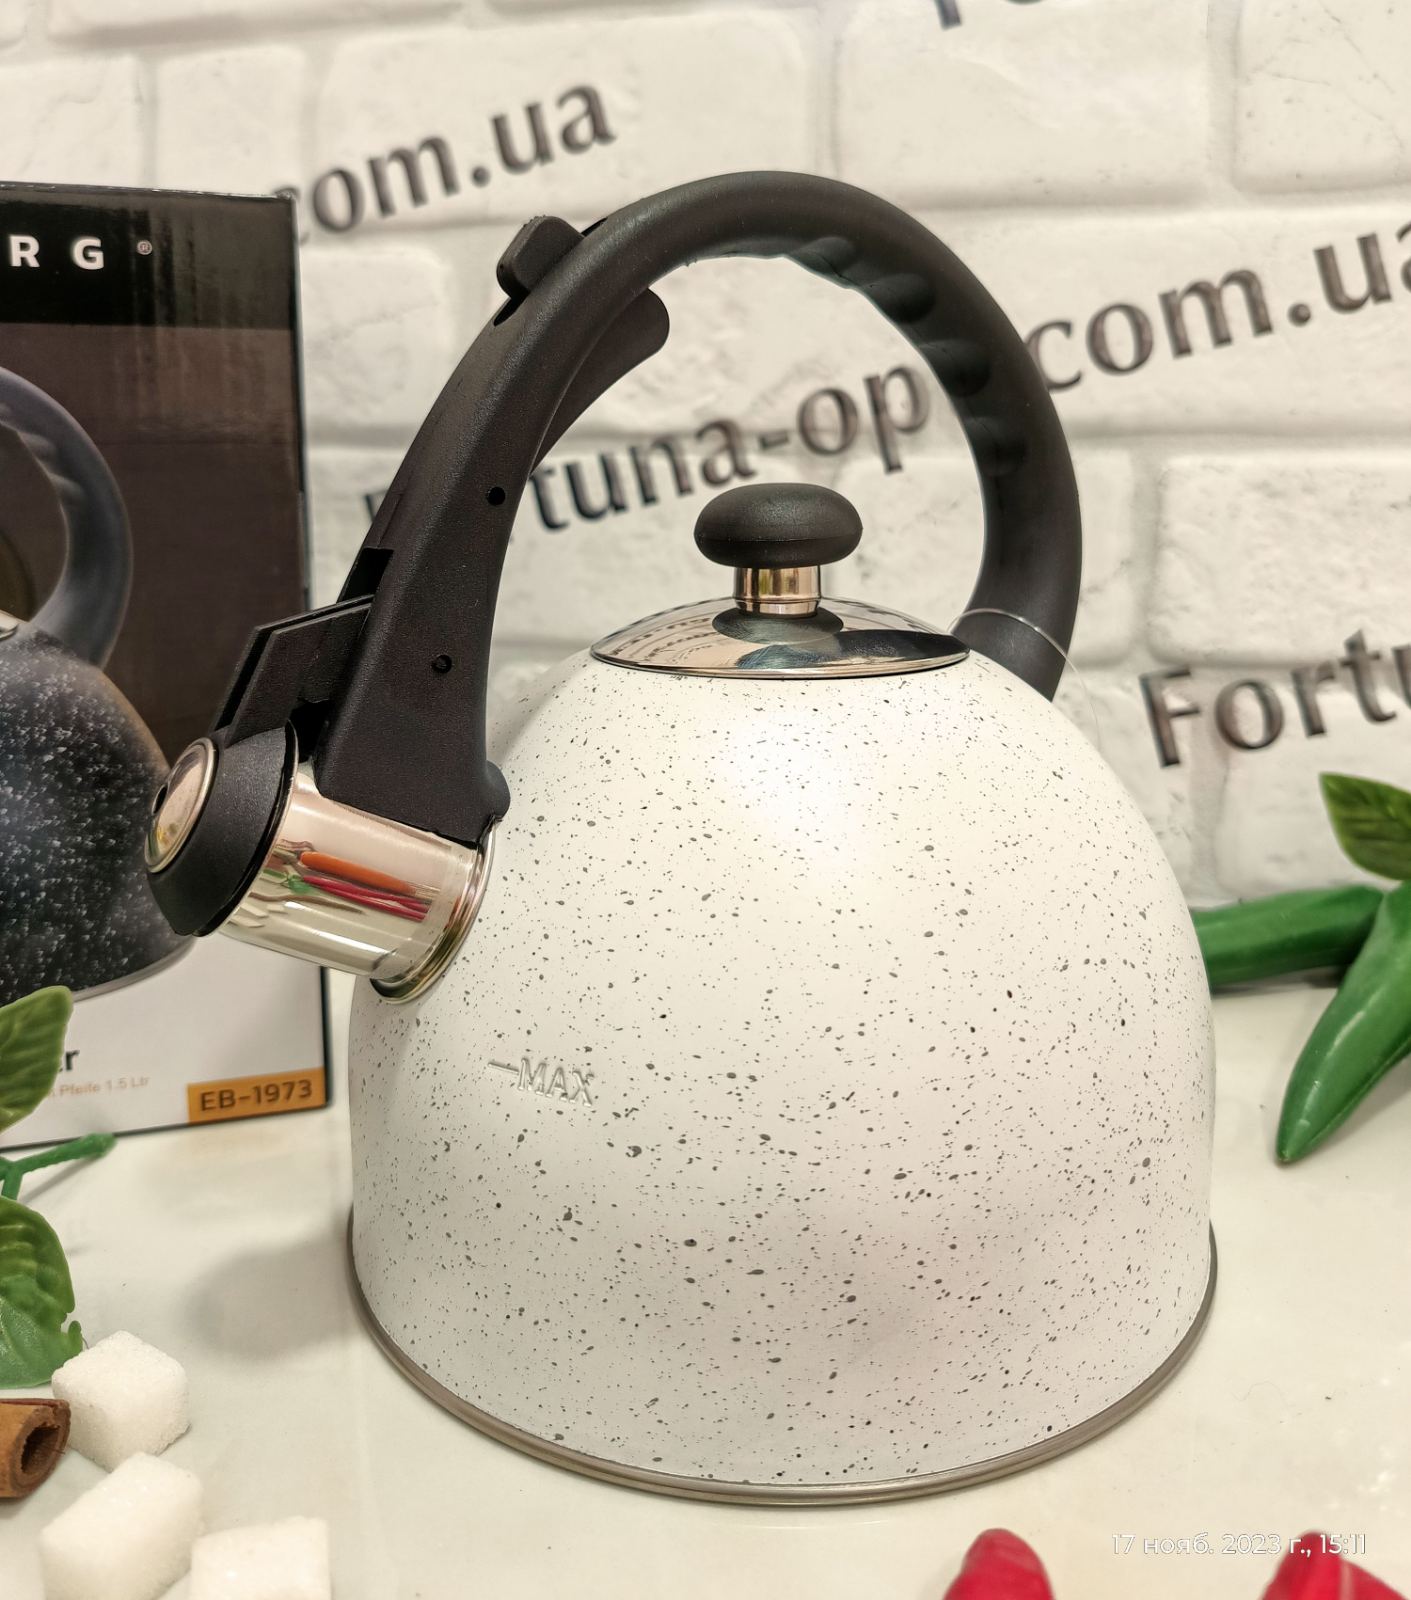 Чайник с мраморной крошкой Edenberg 1,5 л EB - 1973 ✅ базовая цена $9.50 ✔ Опт ✔ Скидки ✔ Заходите! - Интернет-магазин ✅ Фортуна-опт ✅